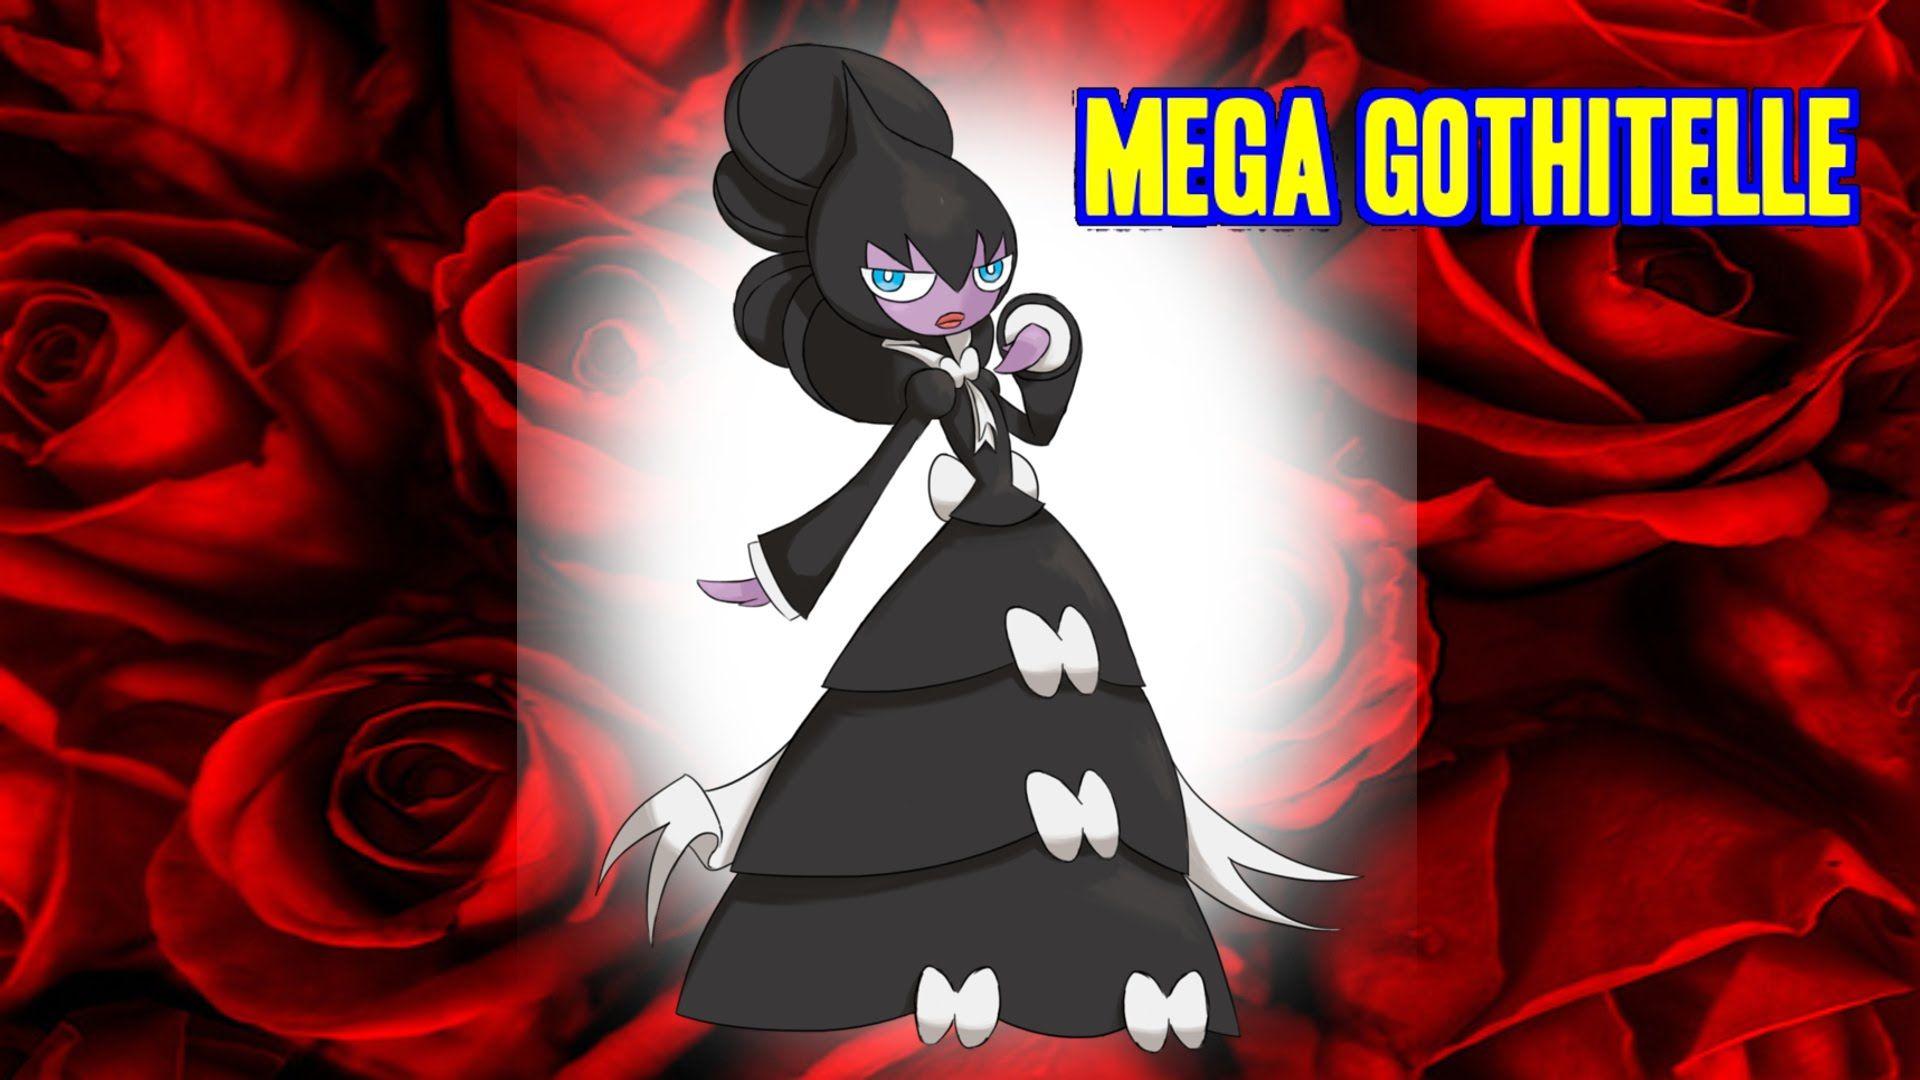 Mega Gothitelle Confirmed for Pokemon Z Version? 